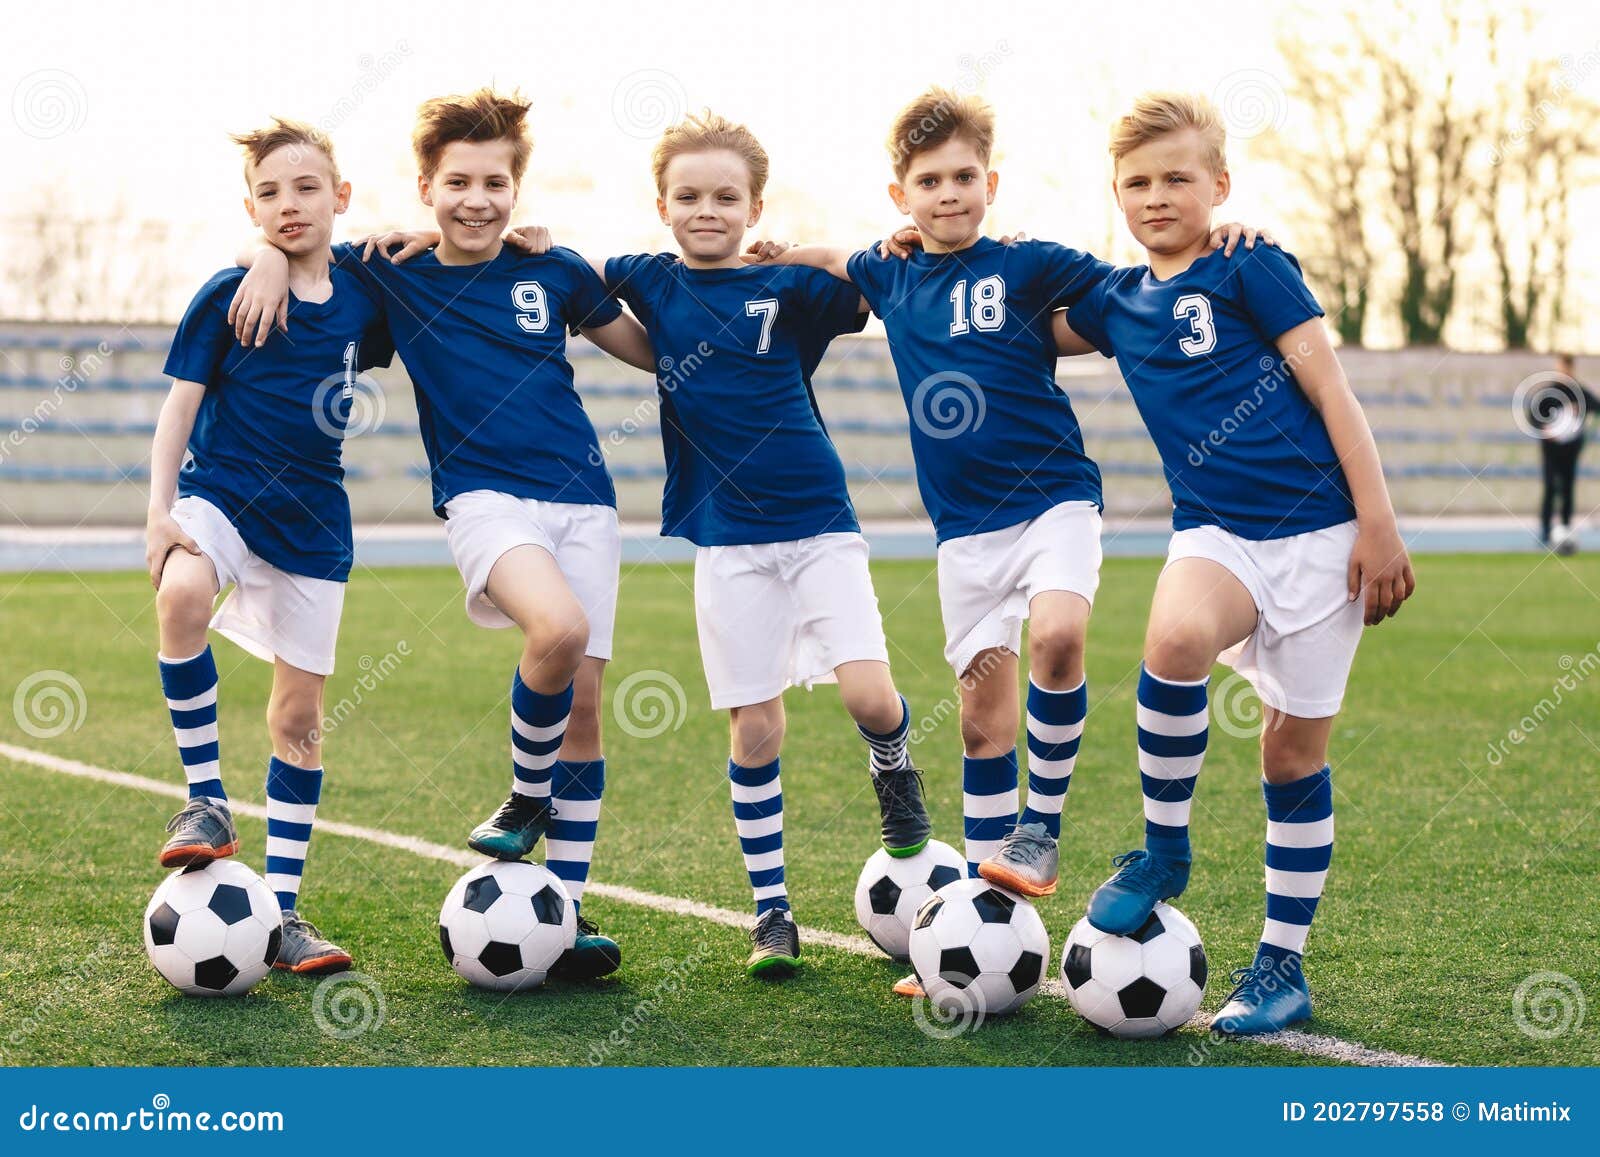 Chicos De Escuela Deportiva En Equipo De Fútbol. Grupo De Niños En Ropa Deportiva De La Camiseta De De Pie Con Bolas En El Foto de archivo - Imagen de